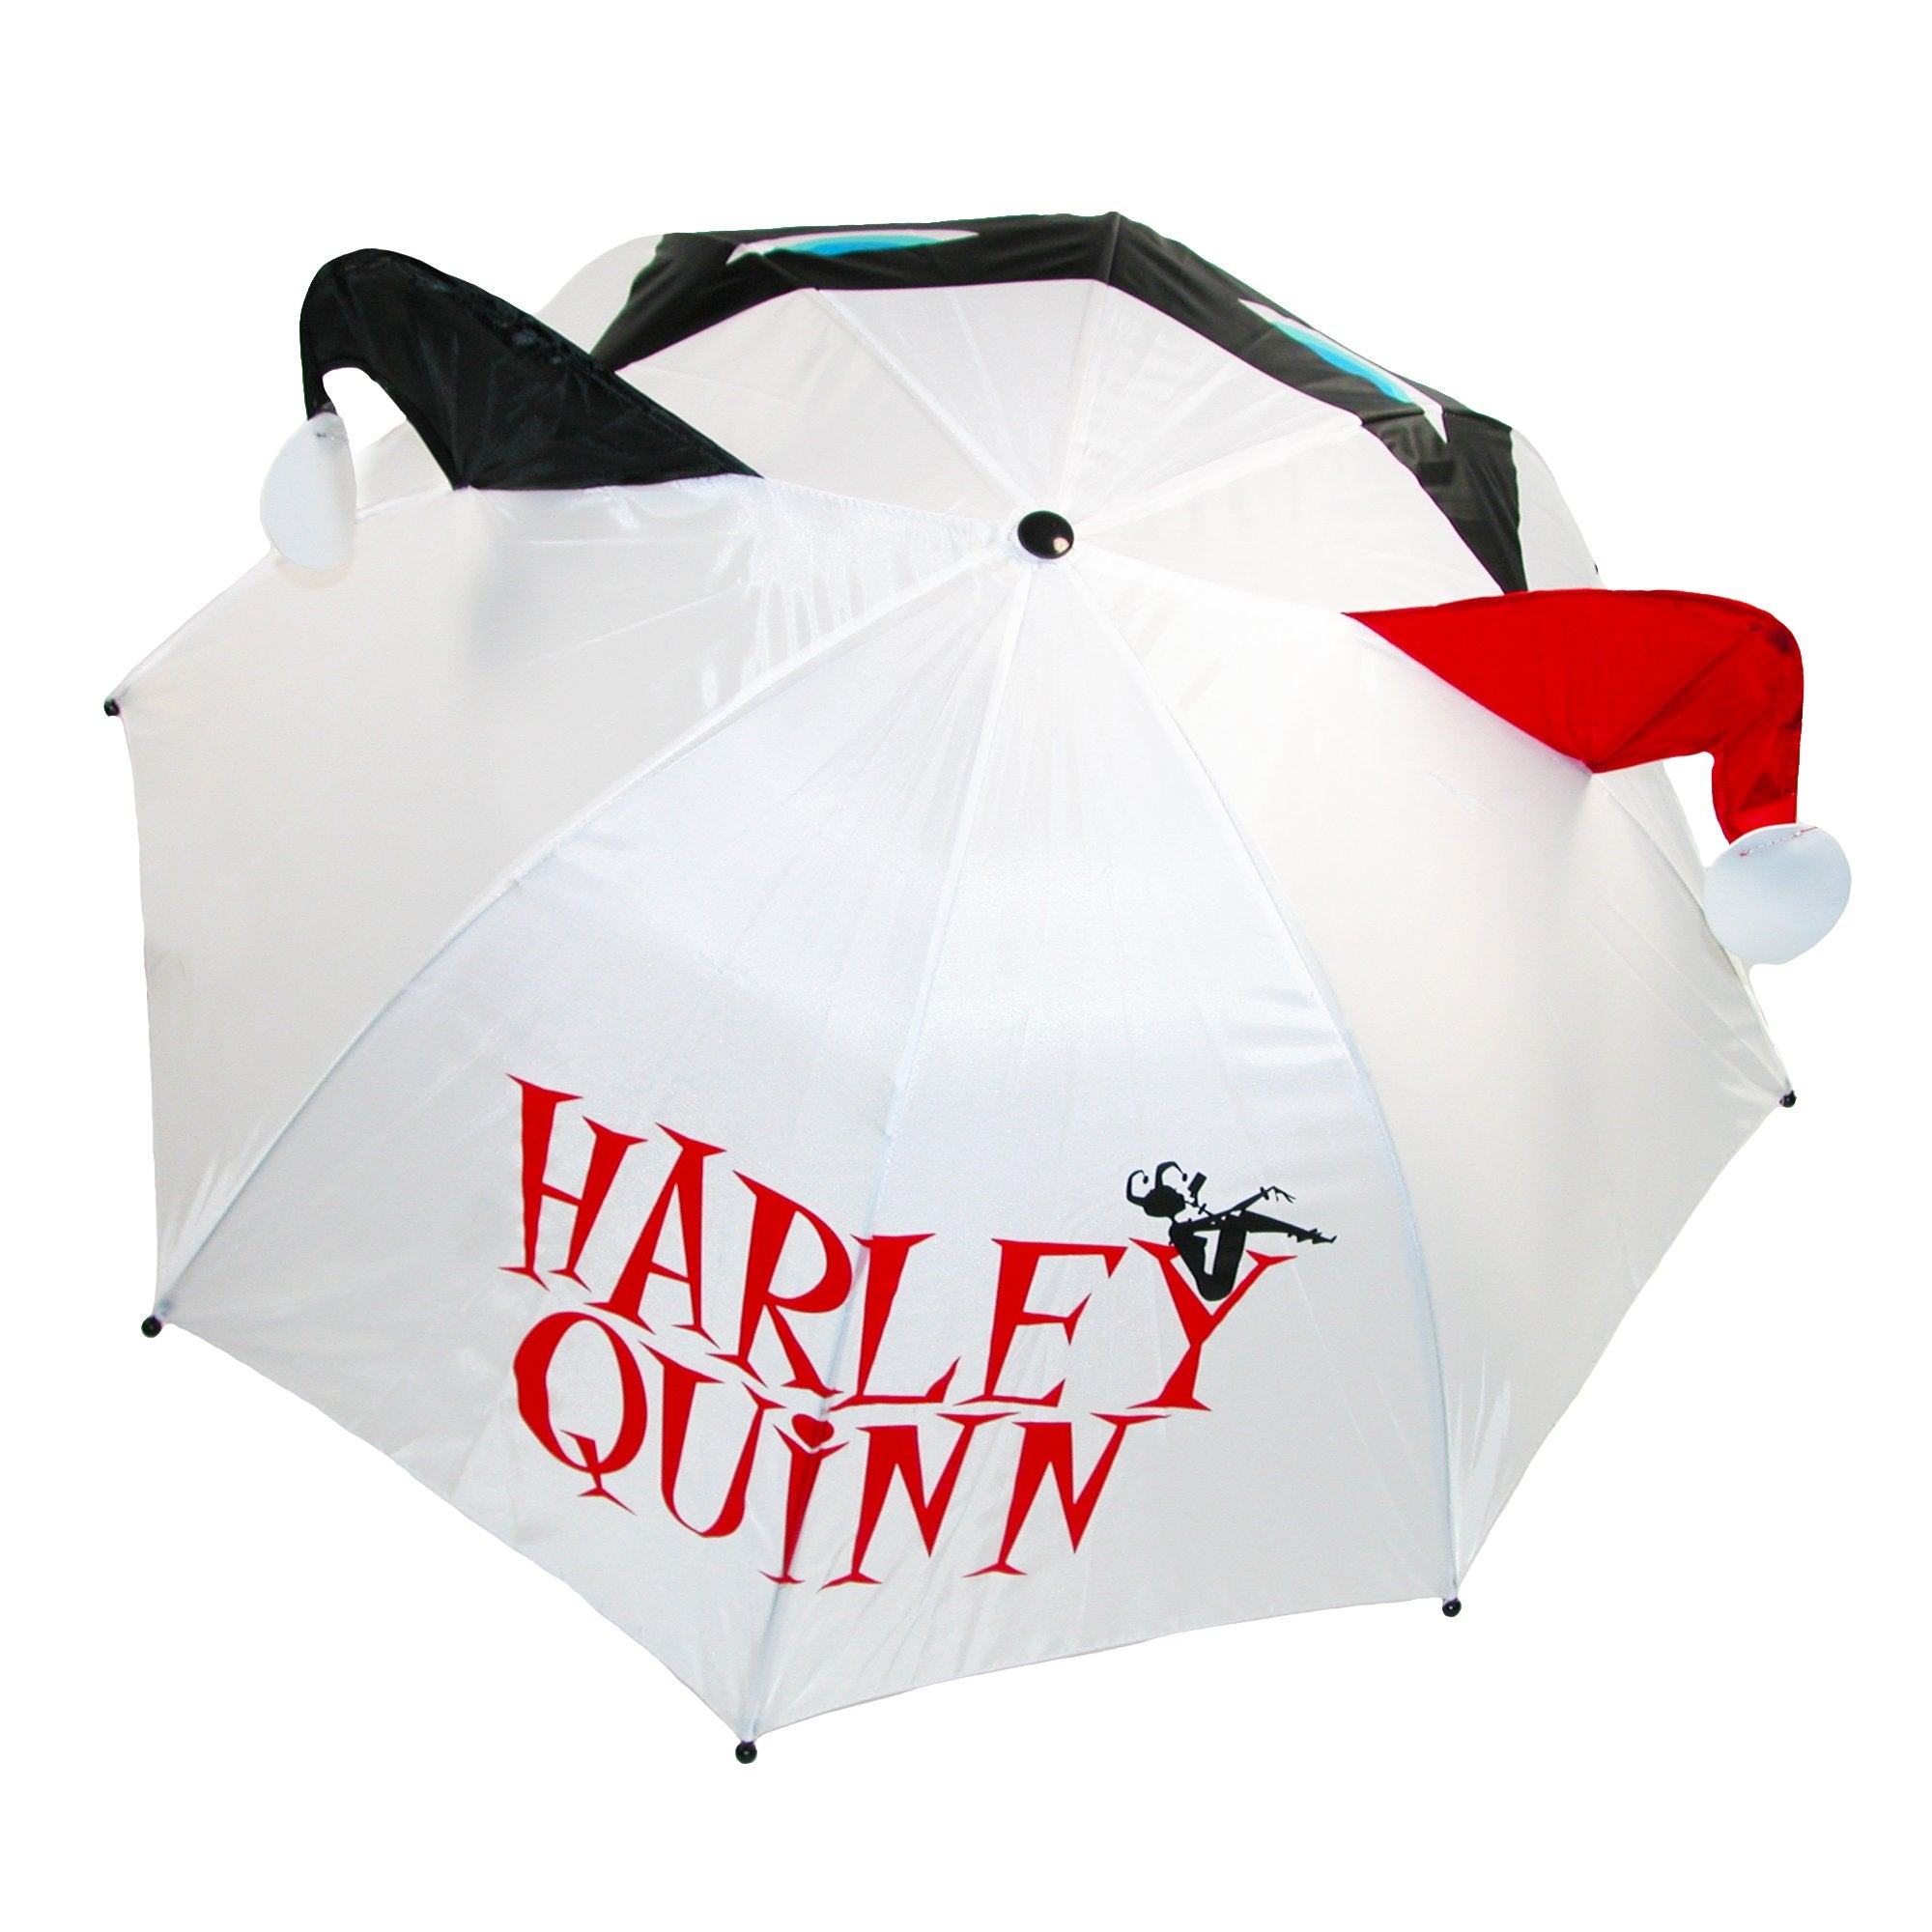 Harley Quinn 3D Umbrella